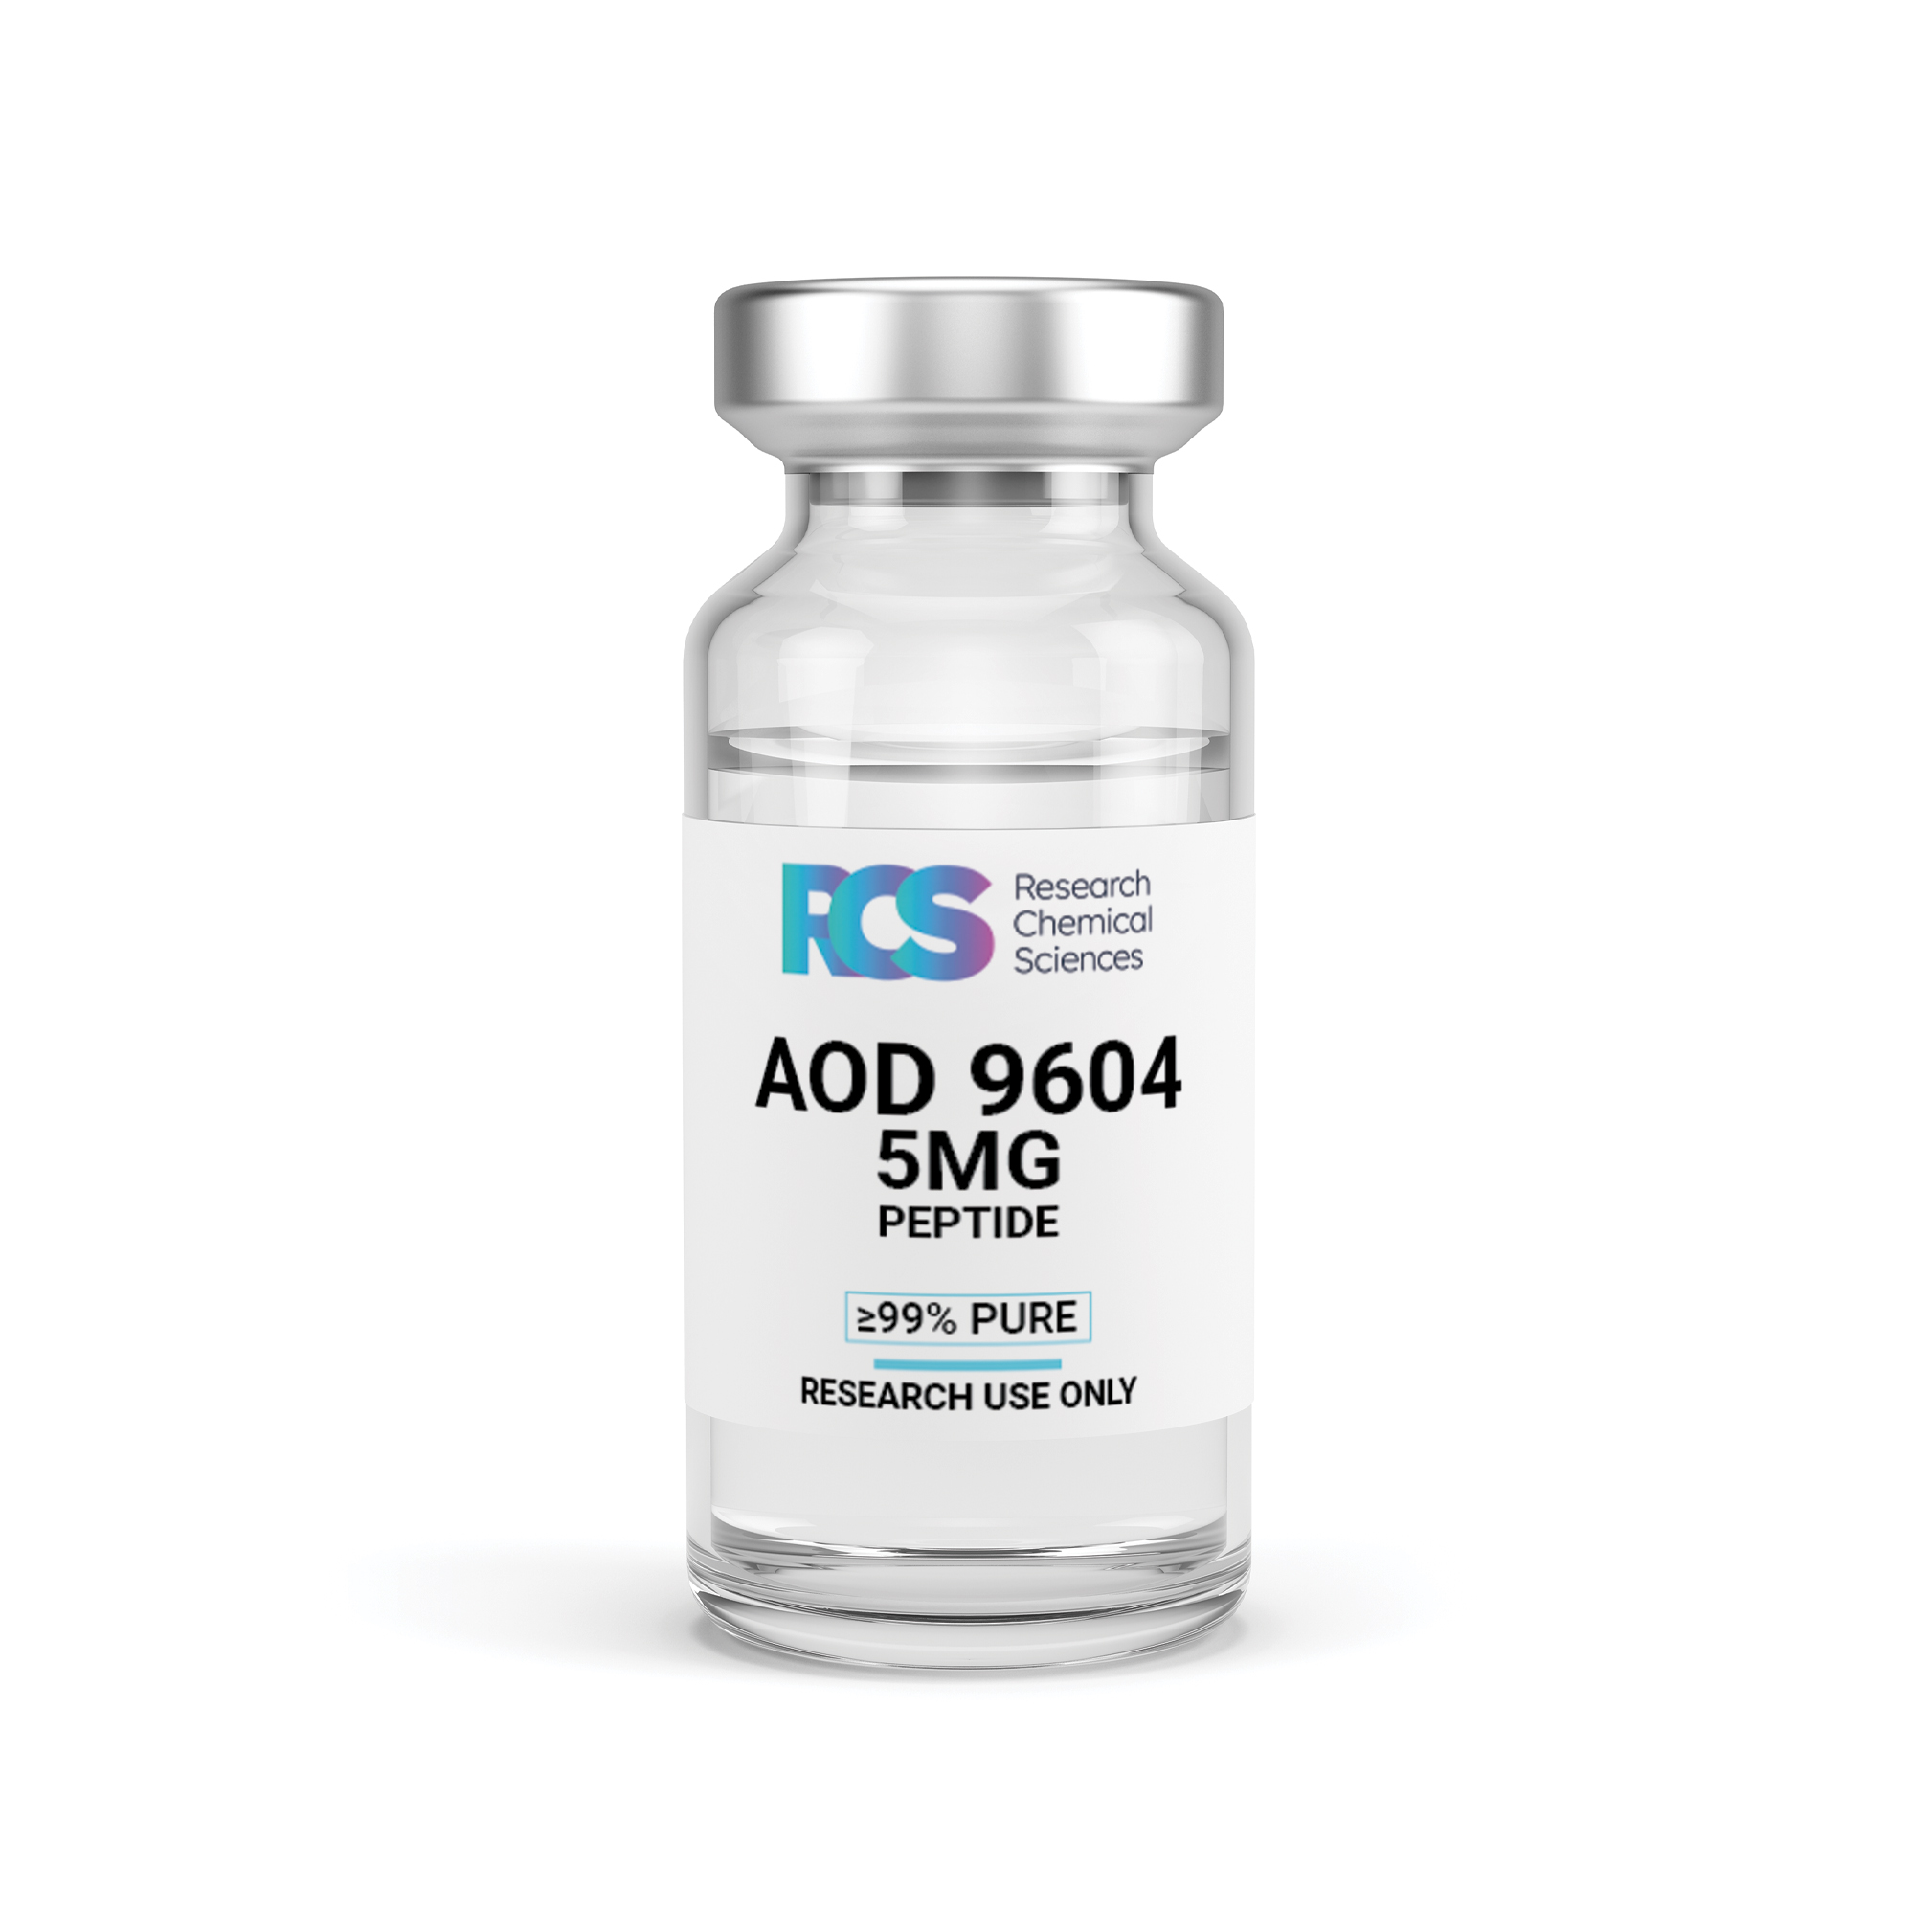 RCS-AOD9604-Peptide-5MG-Side-1